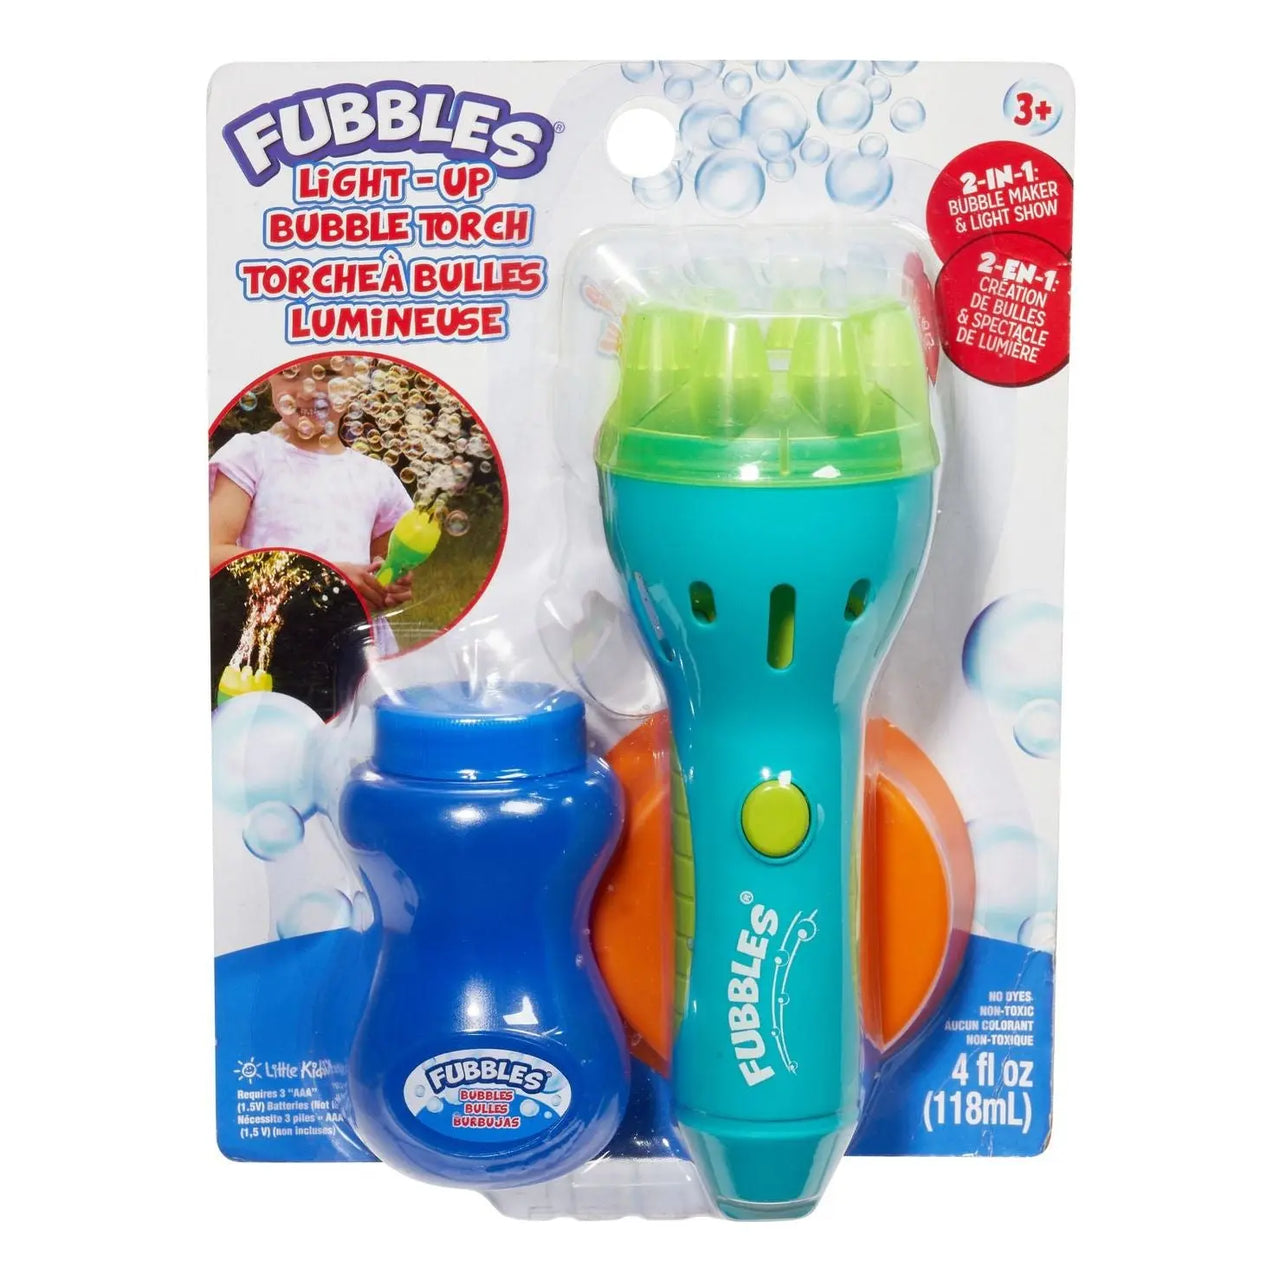 Fubbles Light-Up Bubble Torch Fubbles